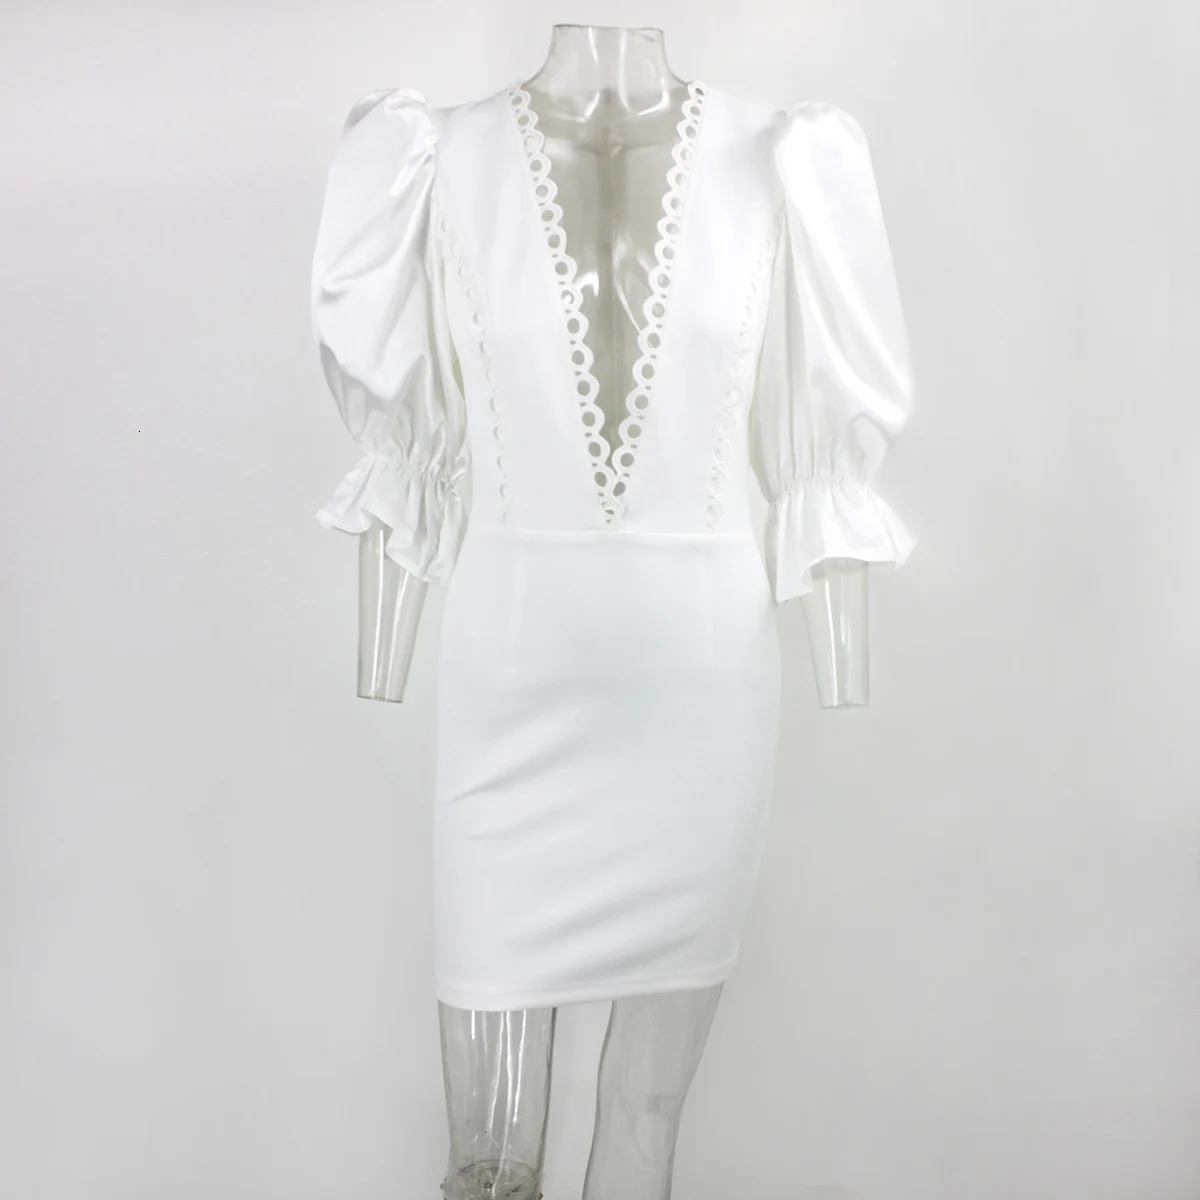 COSYGAL Винтаж с низким вырезом зимнее платье Для женщин Bodycon Ночной клуб вечерние белое платье женские кружевные сапоги на рукав-бабочка; мини-платье